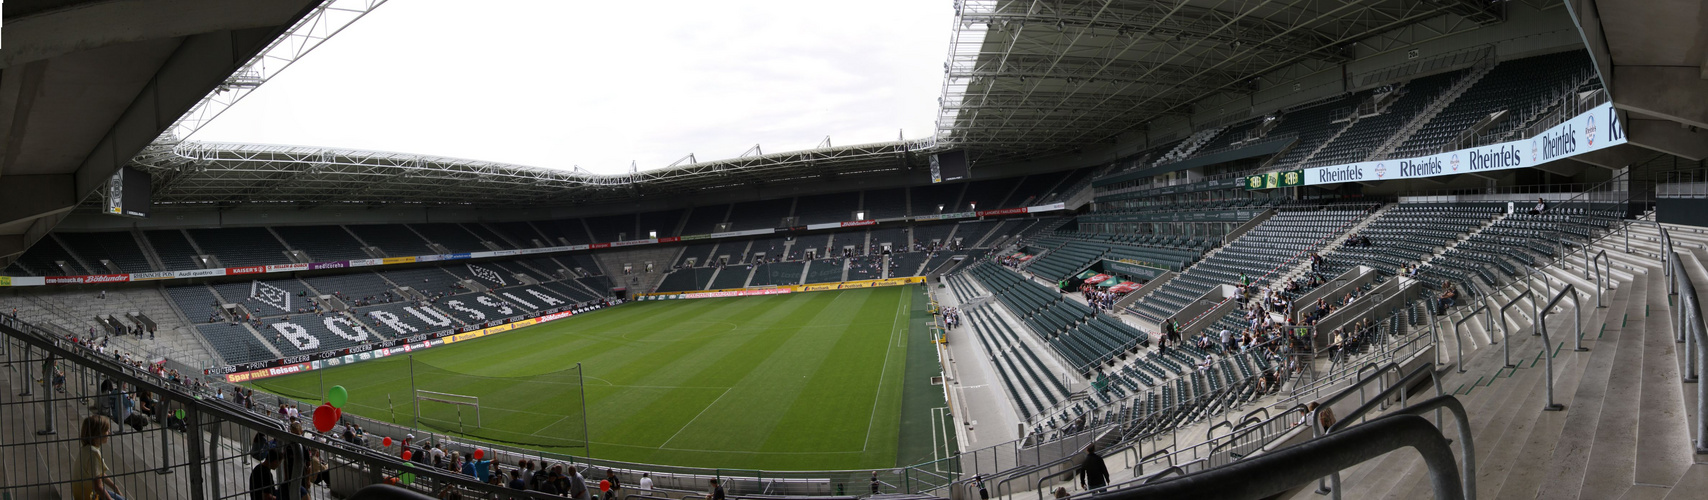 Borussia Mönchengladbach Stadion